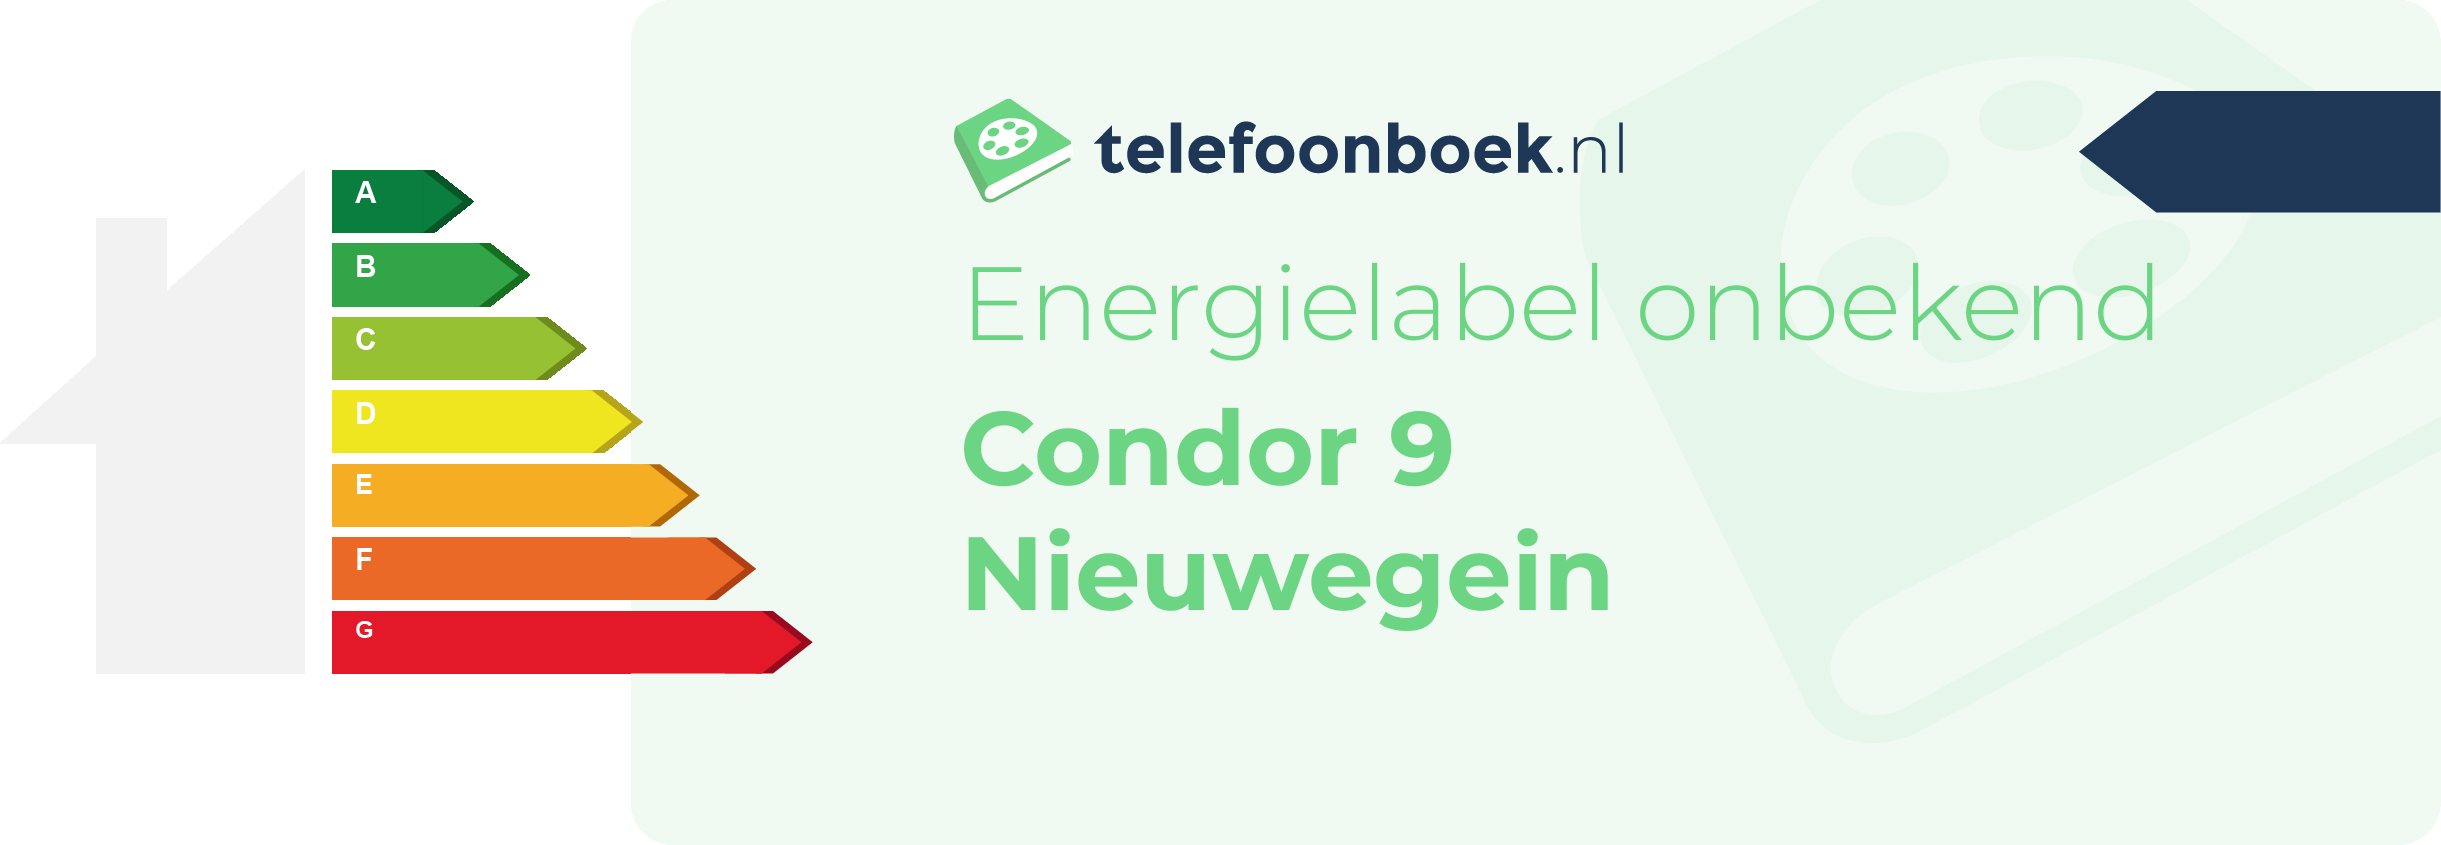 Energielabel Condor 9 Nieuwegein